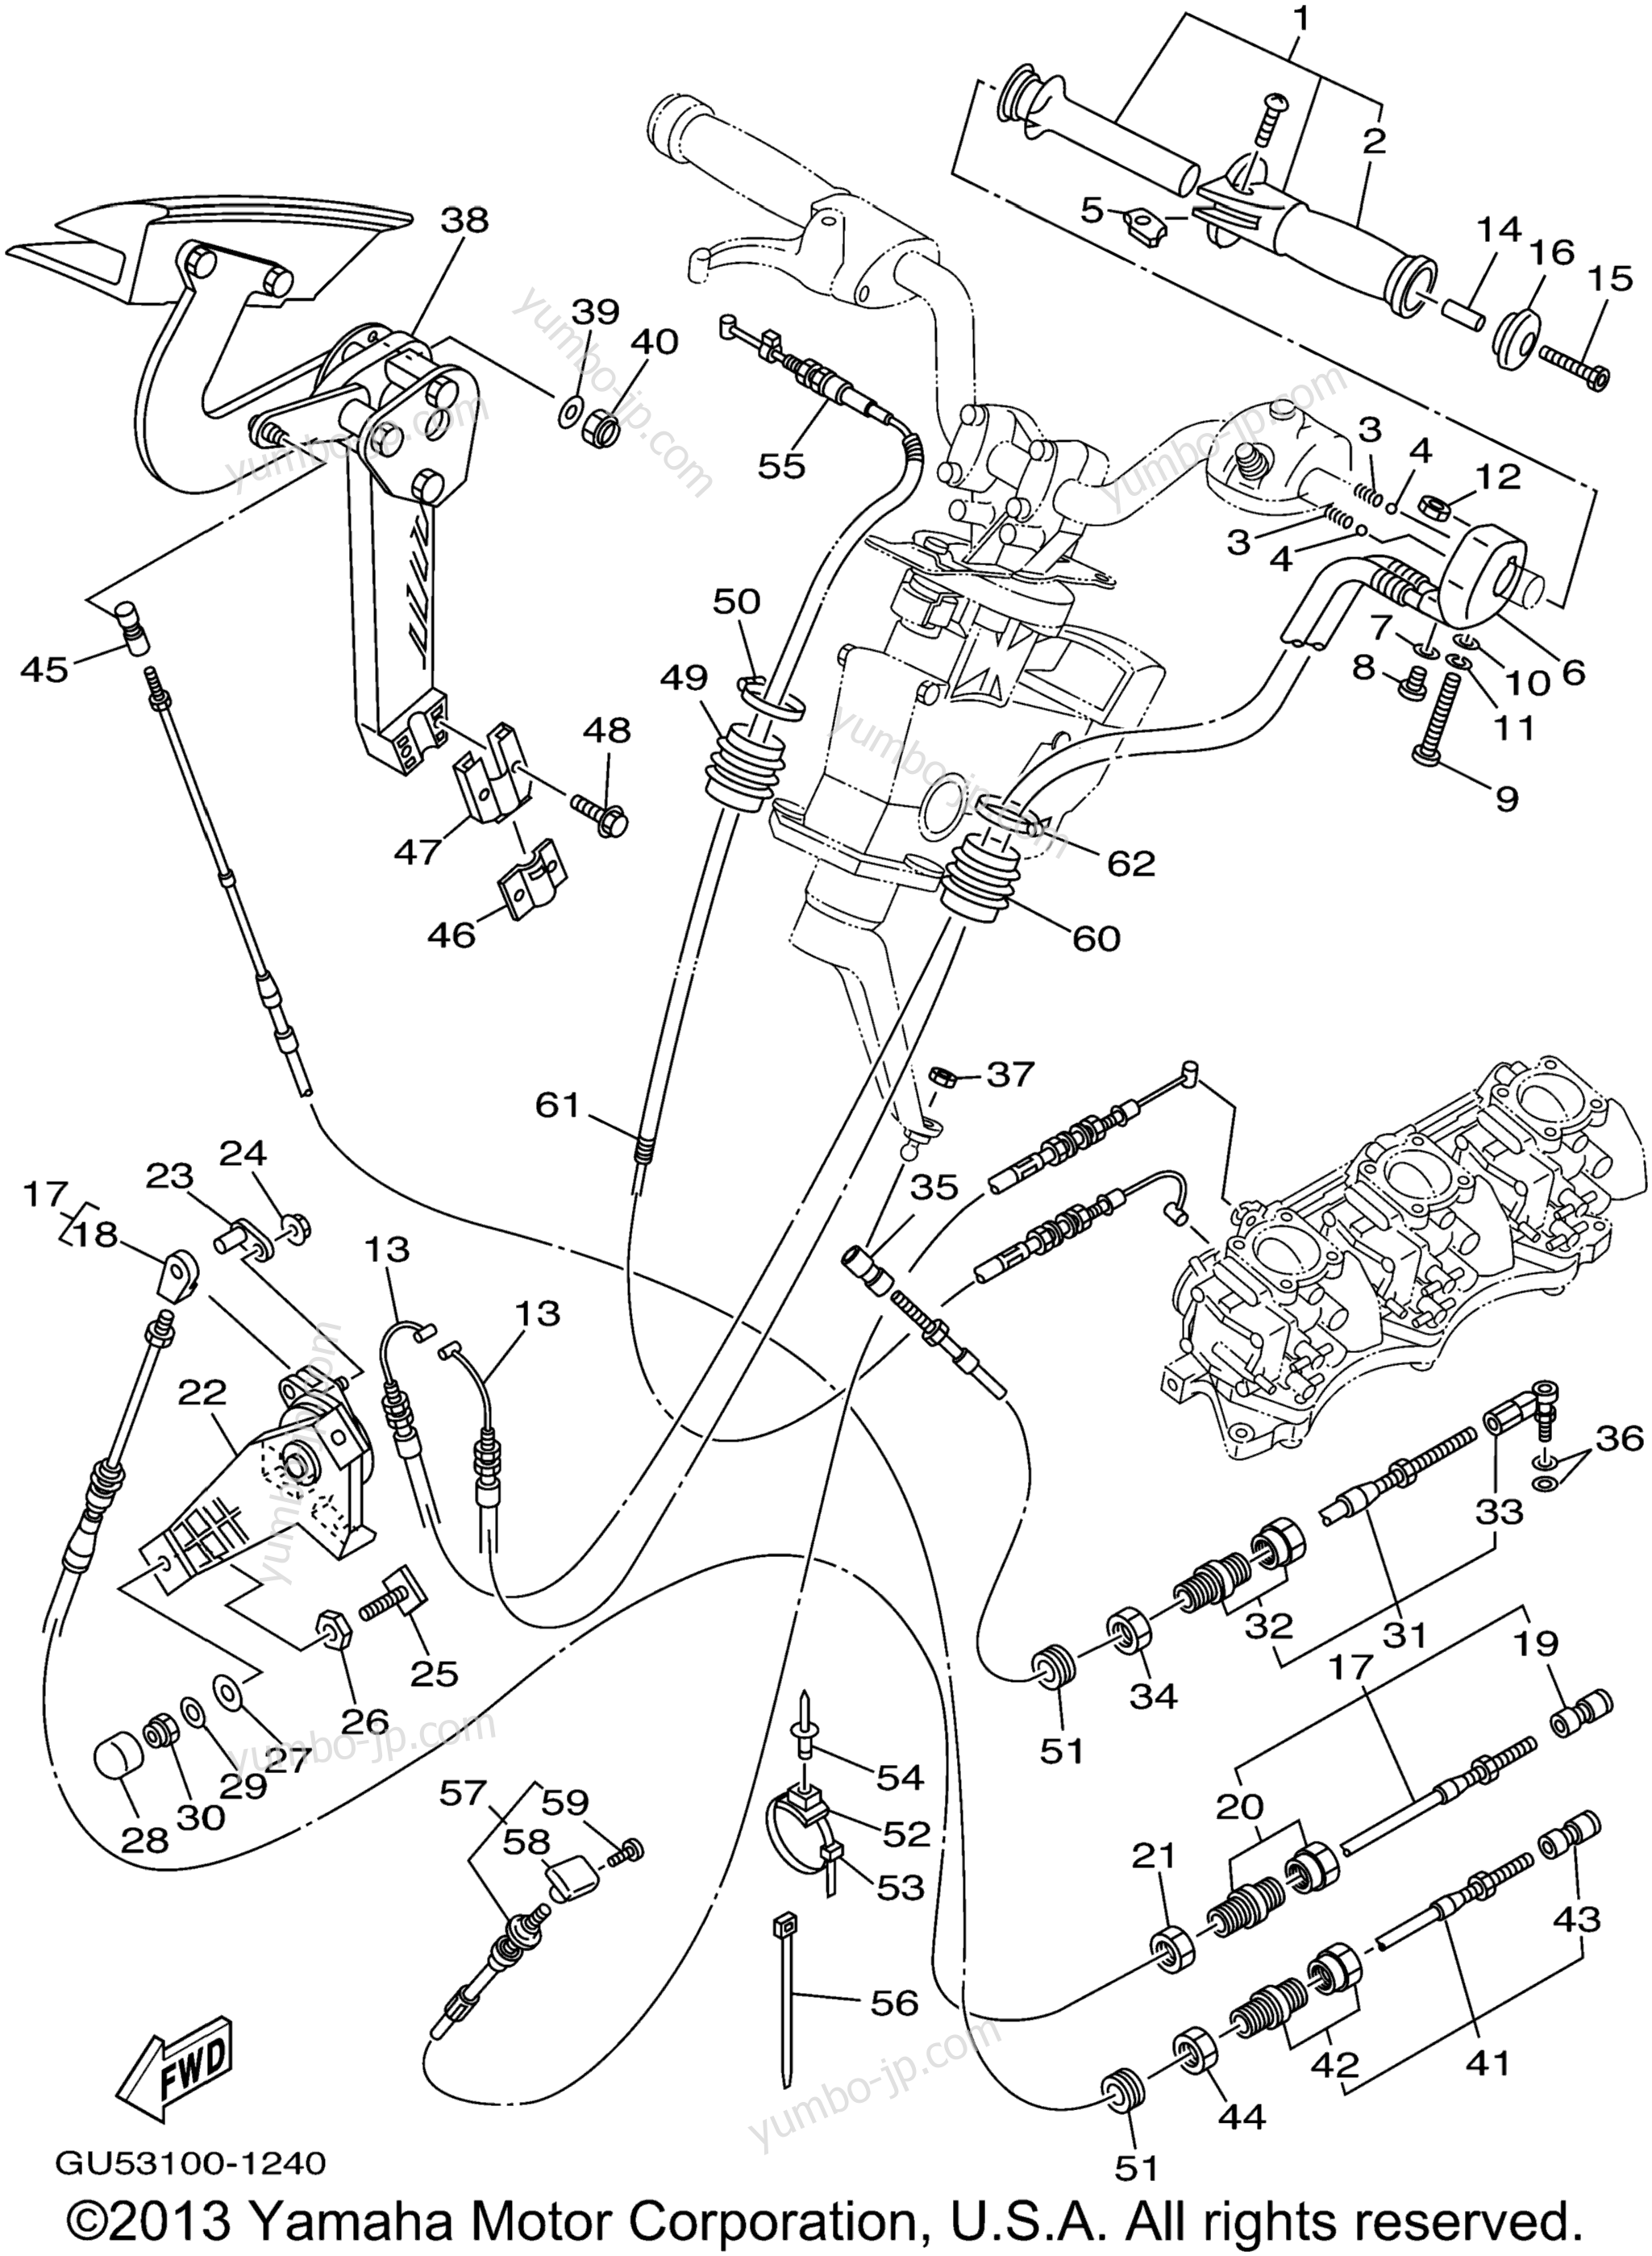 Устройство дистанционного управления / Кабеля для гидроциклов YAMAHA SUV1200 (SV1200Z) 2001 г.